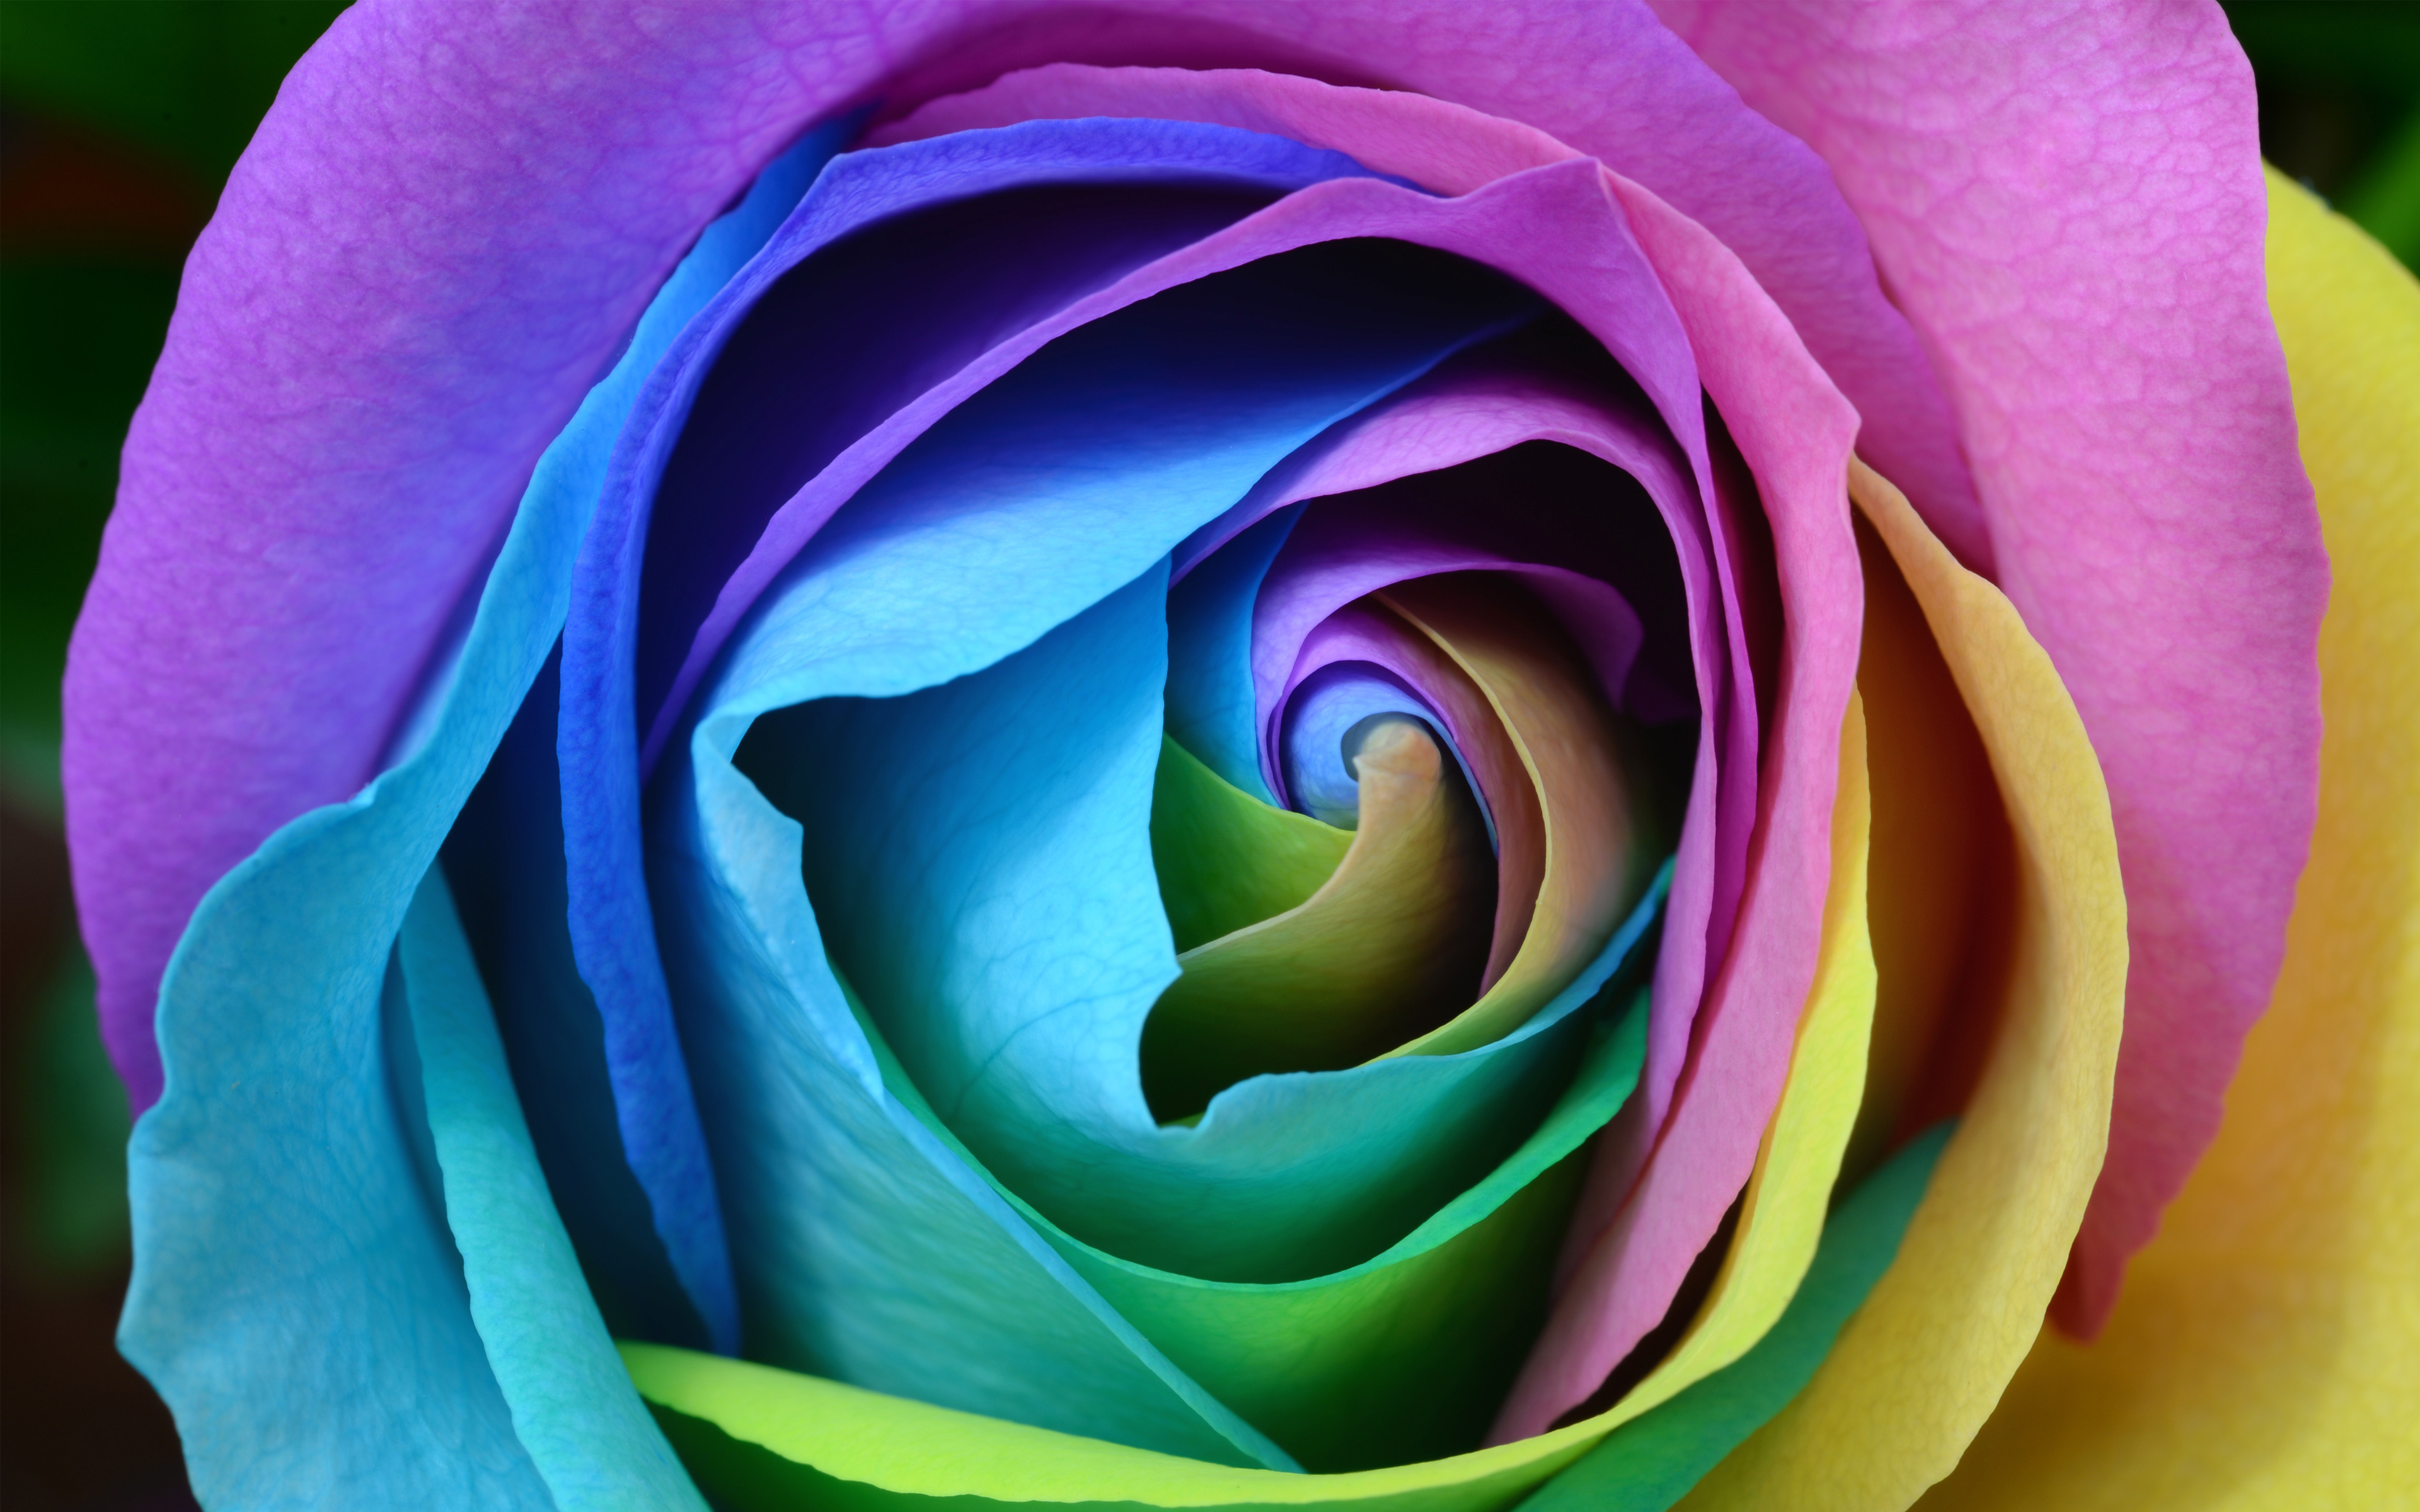 Colorful Rose 4K9407912204 - Colorful Rose 4K - Rose, Colorful, Bokeh